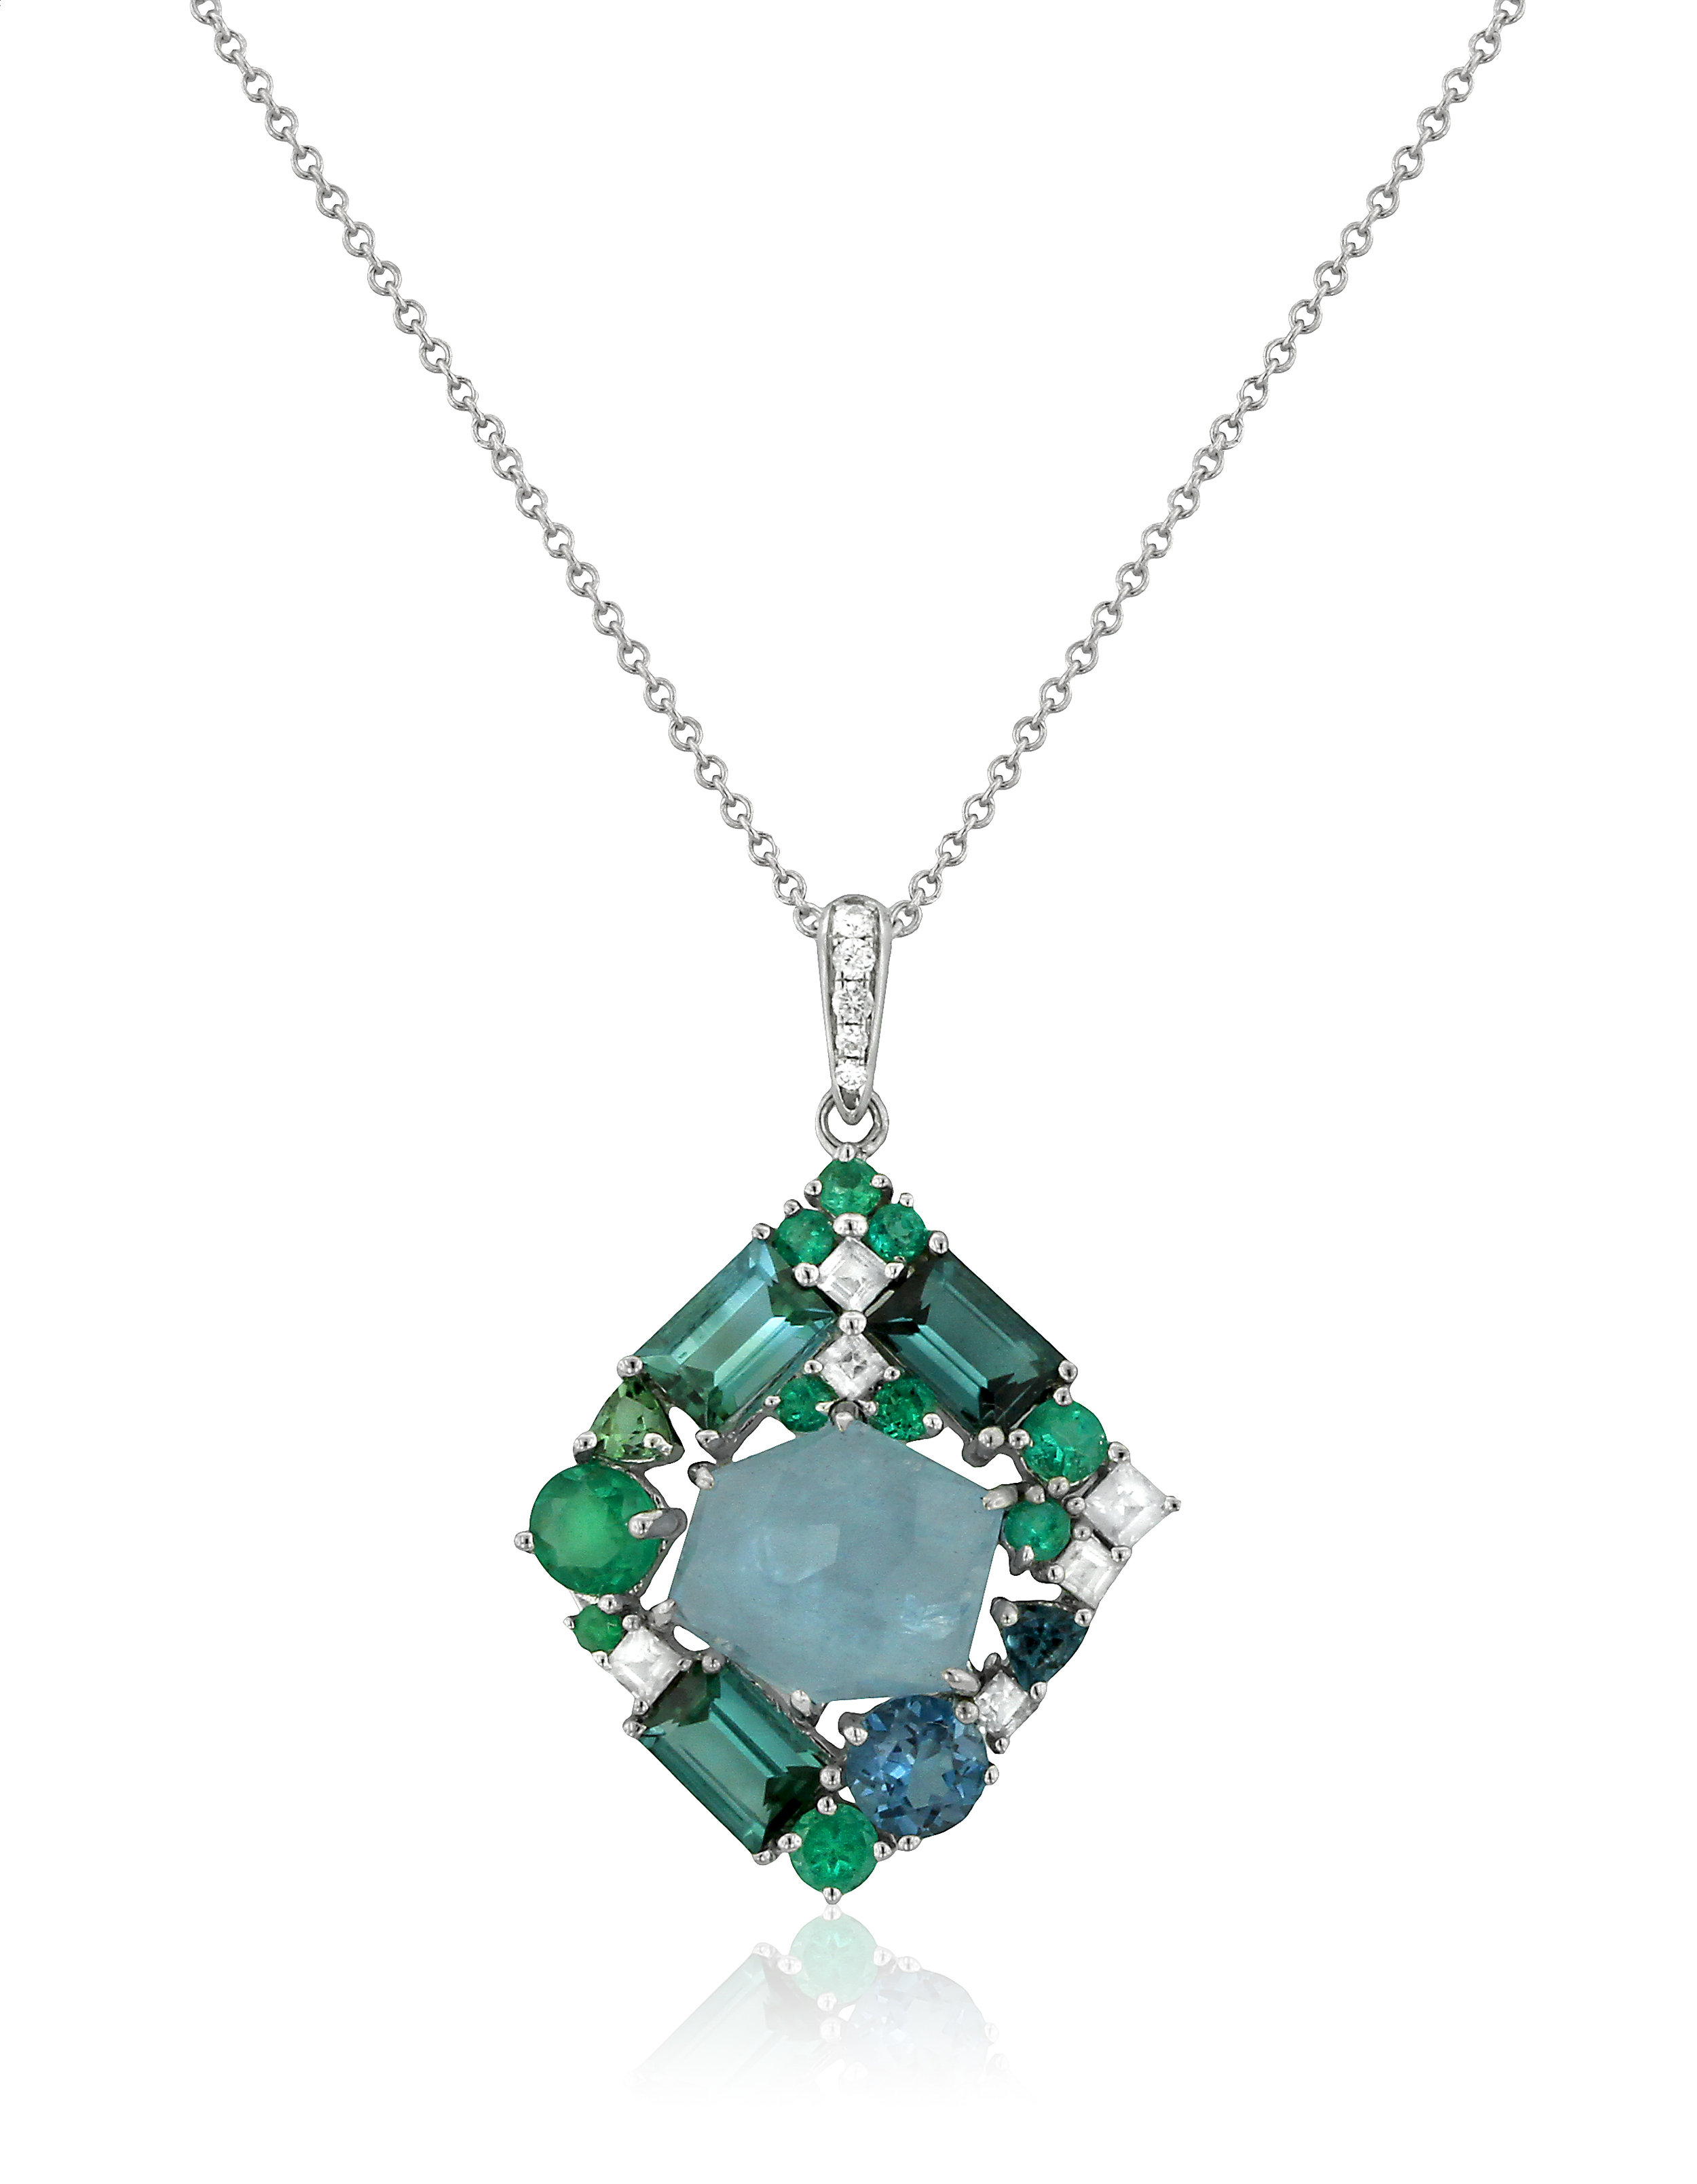 Emerald and Aqua Cluster Pendant